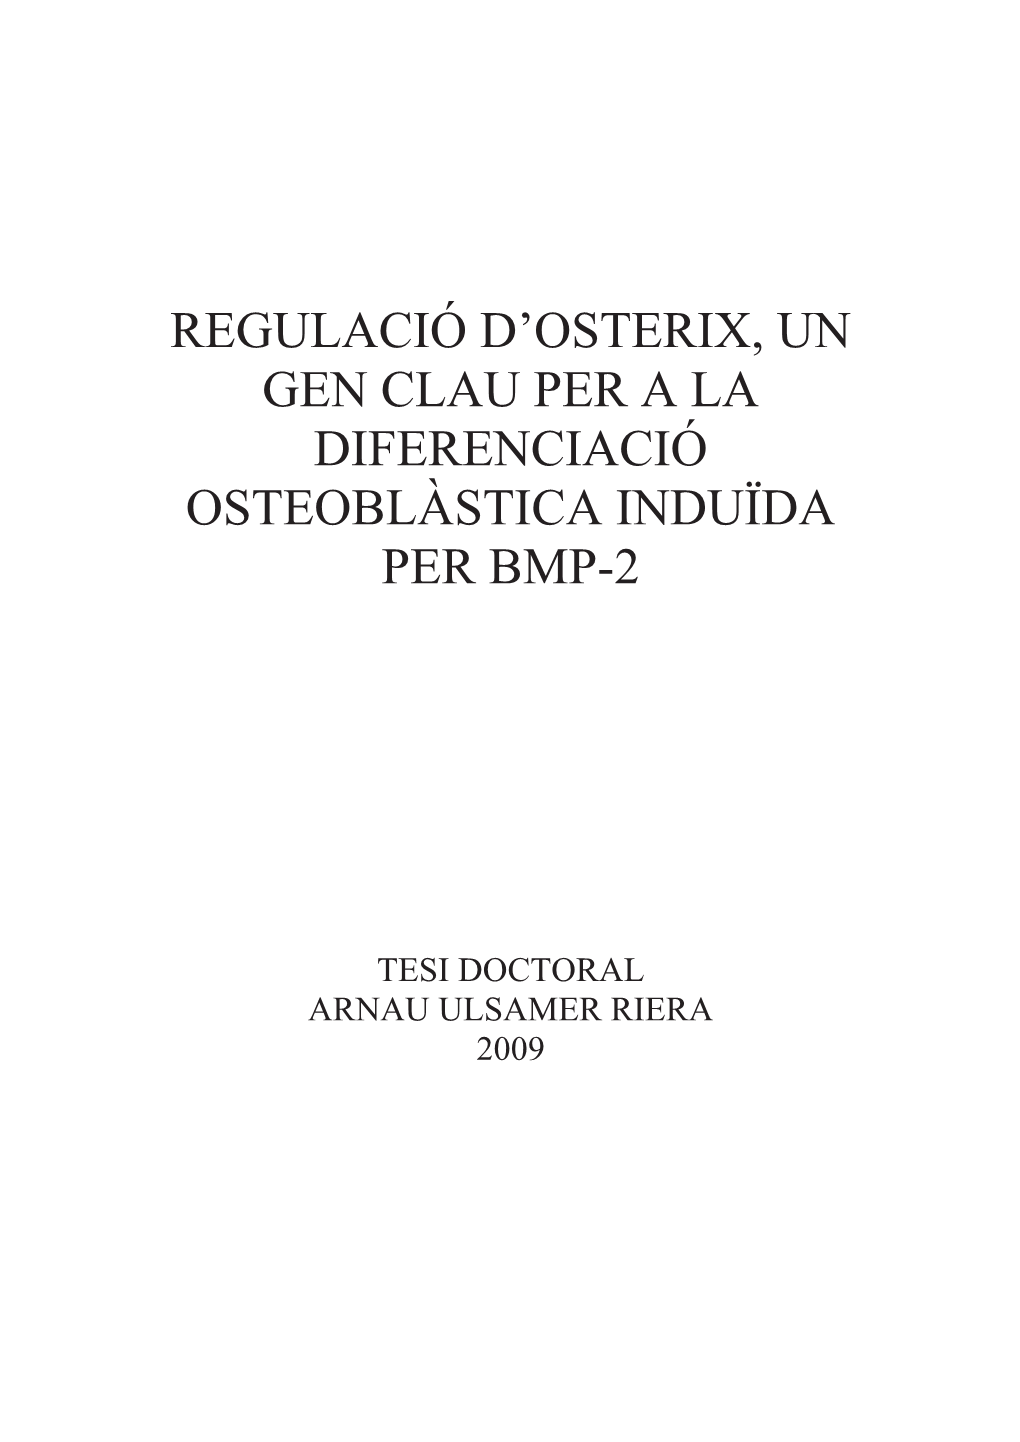 Regulació D'osterix, Un Gen Clau Per a La Diferenciació Osteoblàstica